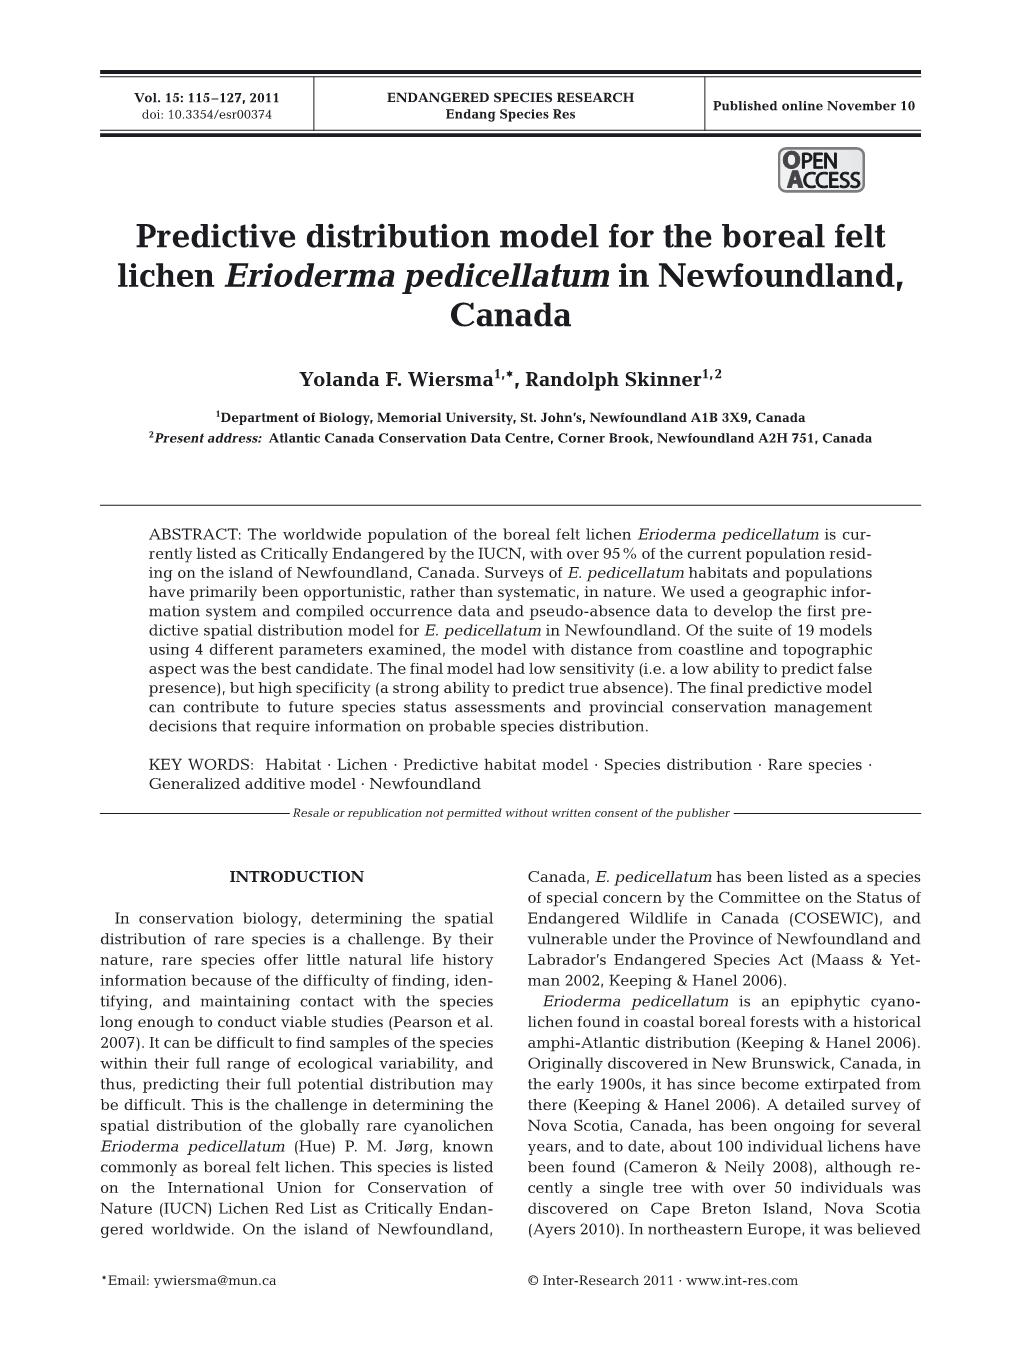 Predictive Distribution Model for the Boreal Felt Lichen Erioderma Pedicellatum in Newfoundland, Canada